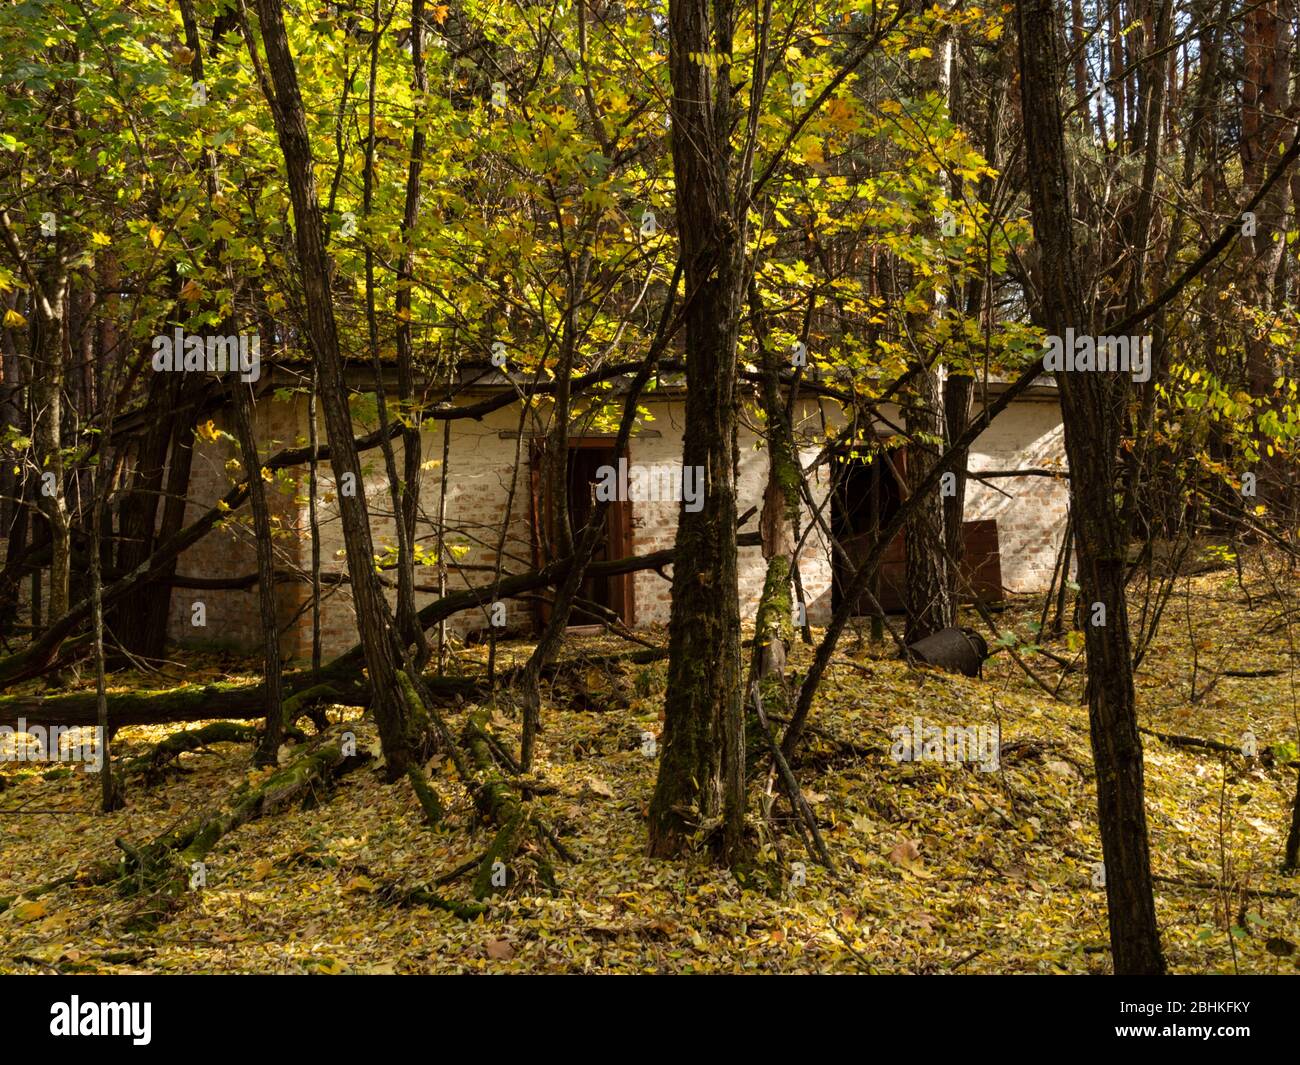 Asilo nido dintorni presi dalla natura nella zona di esclusione di Cernobyl, Ucraina dalla natura nella zona di esclusione di Cernobyl, Ucraina Foto Stock